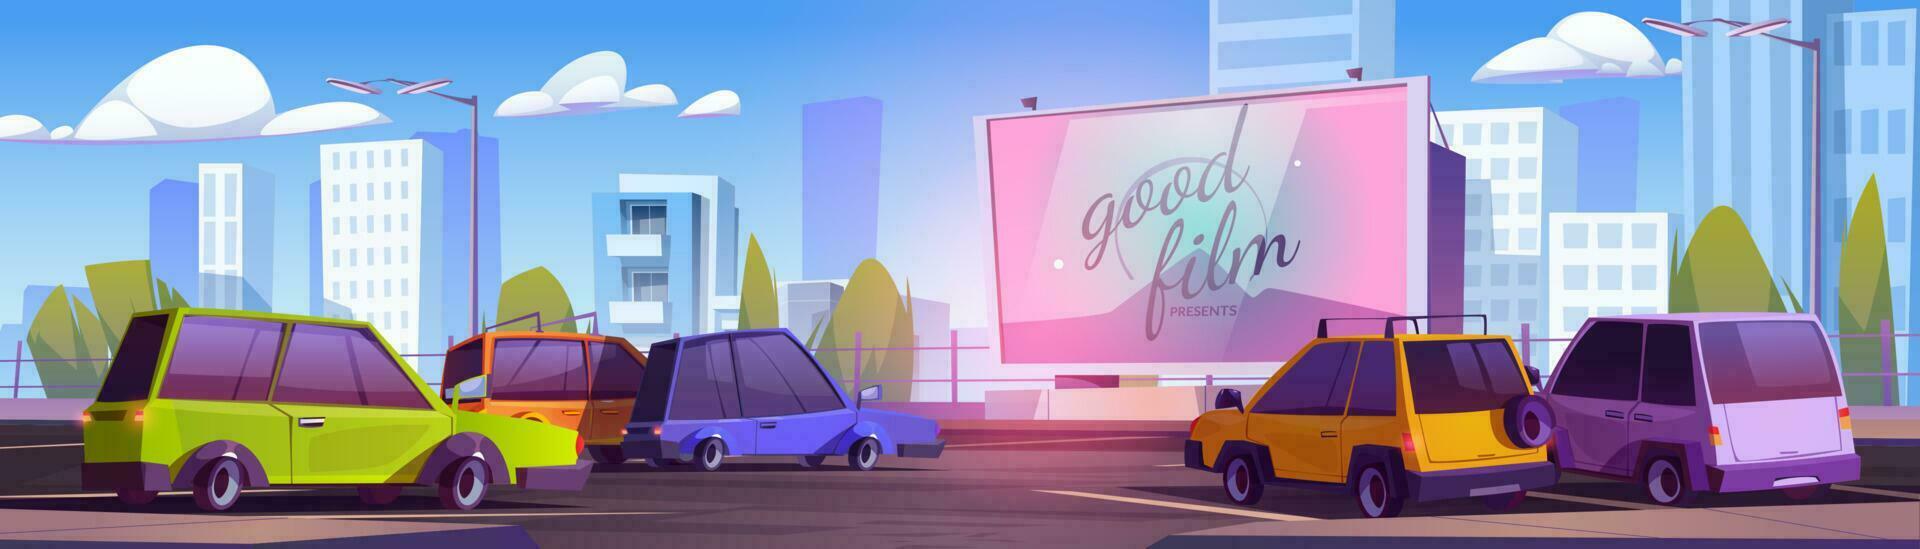 tekenfilm drive-in bioscoop met veel auto's vector